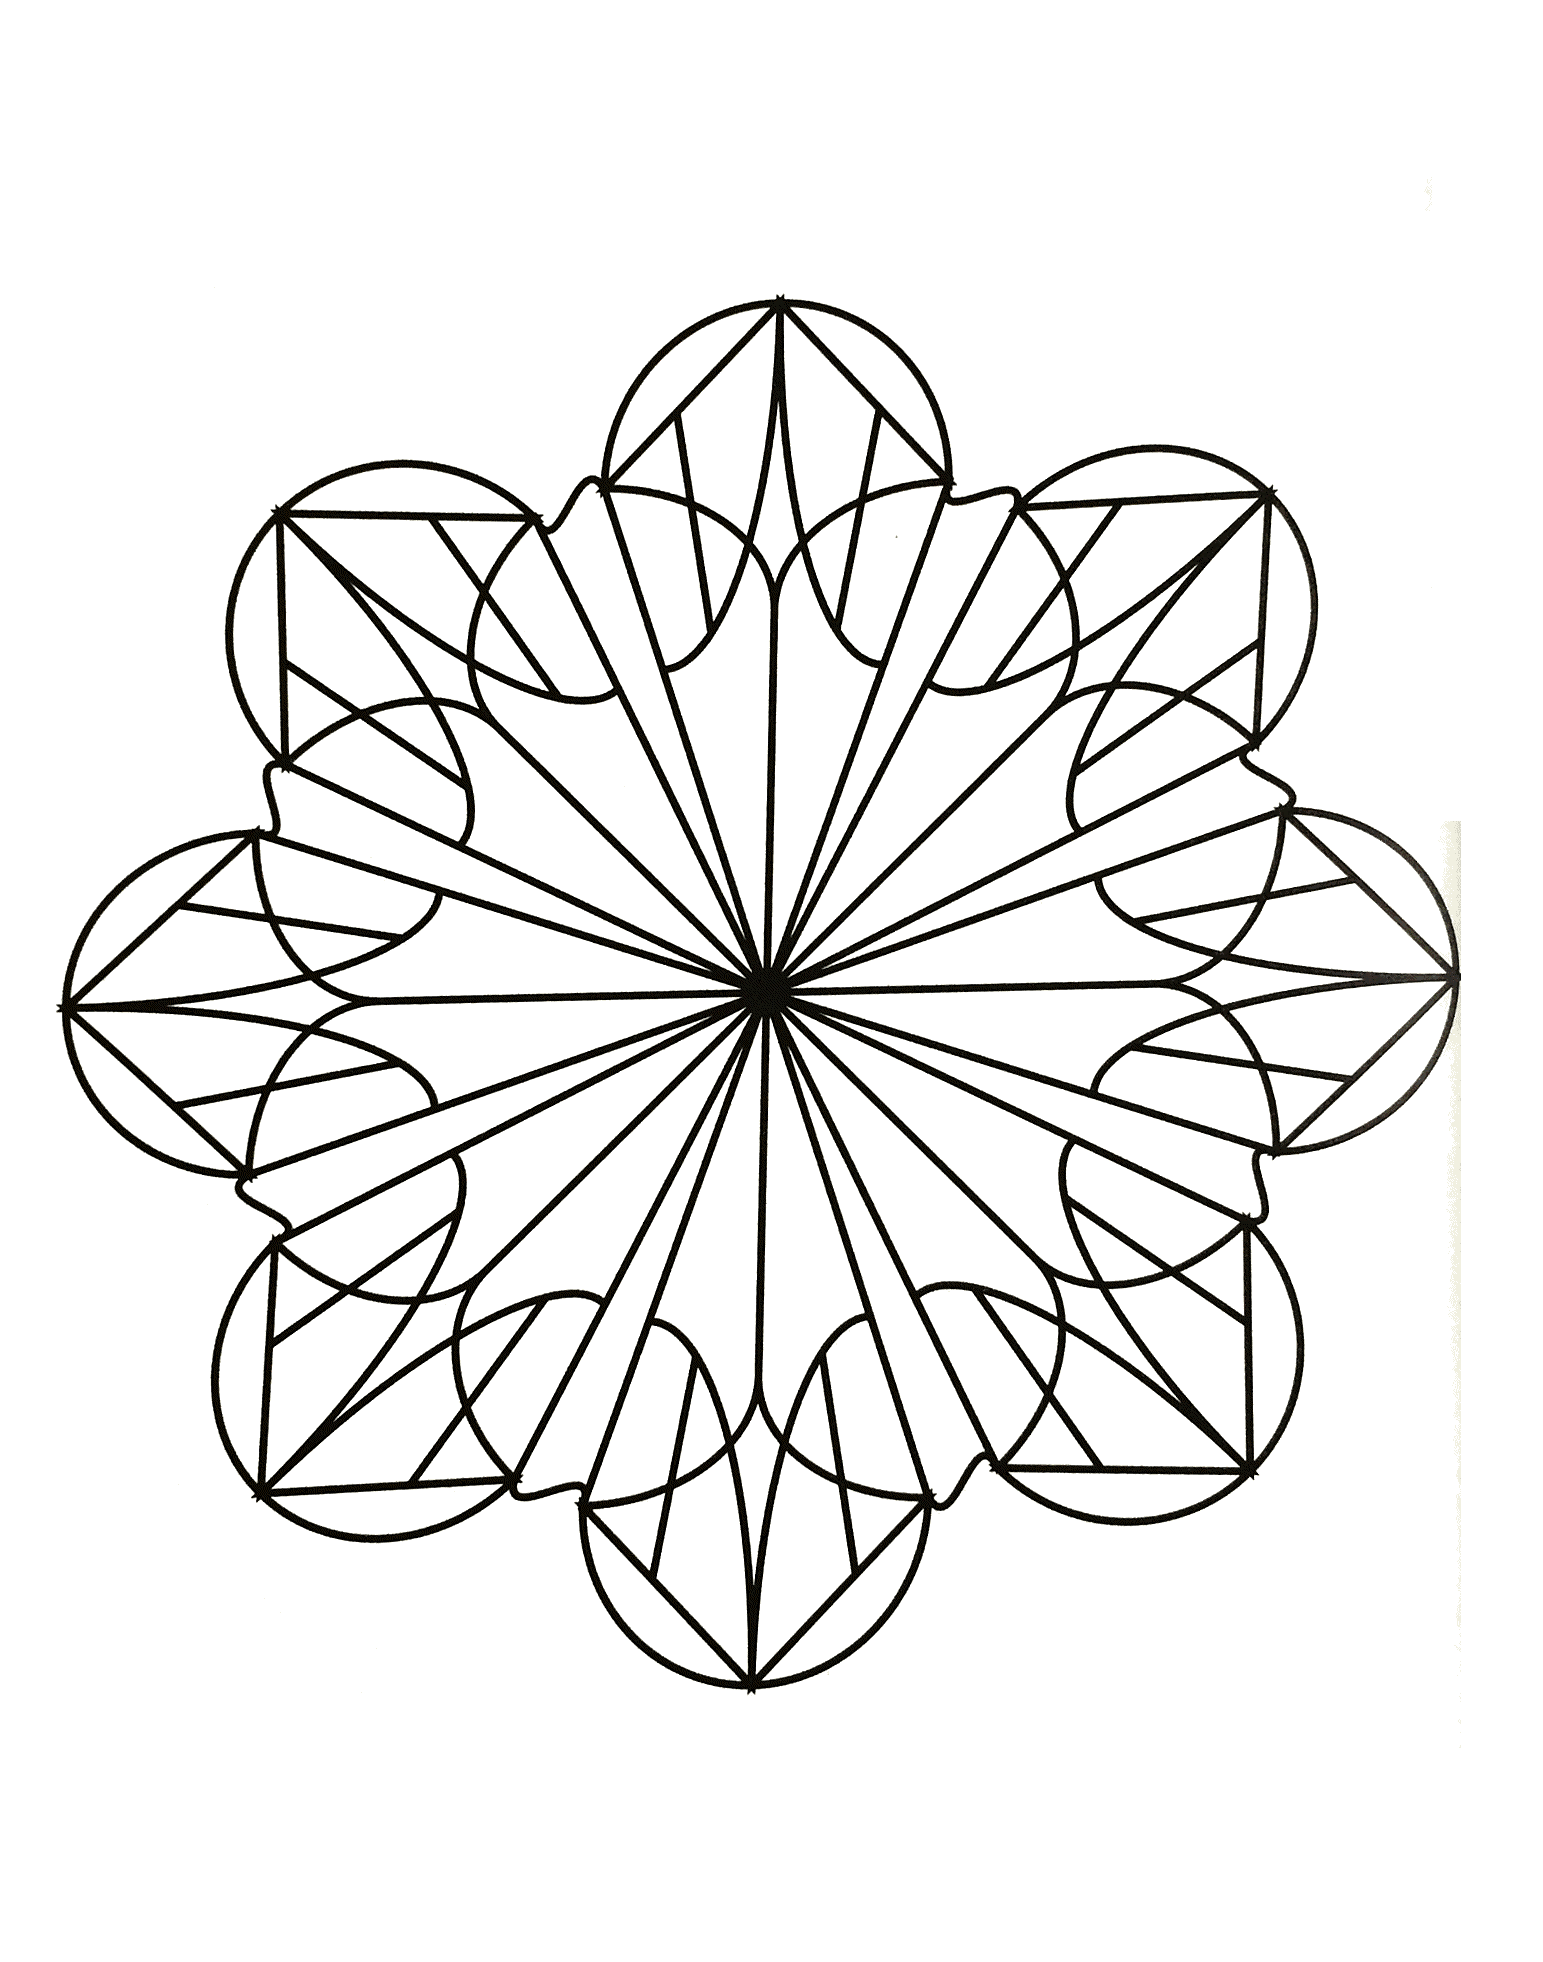 Ein sehr einfaches Ausmalbild von Mandala für die Jüngsten, niedriger Schwierigkeitsgrad. Große Flächen, die leicht auszufüllen sind.